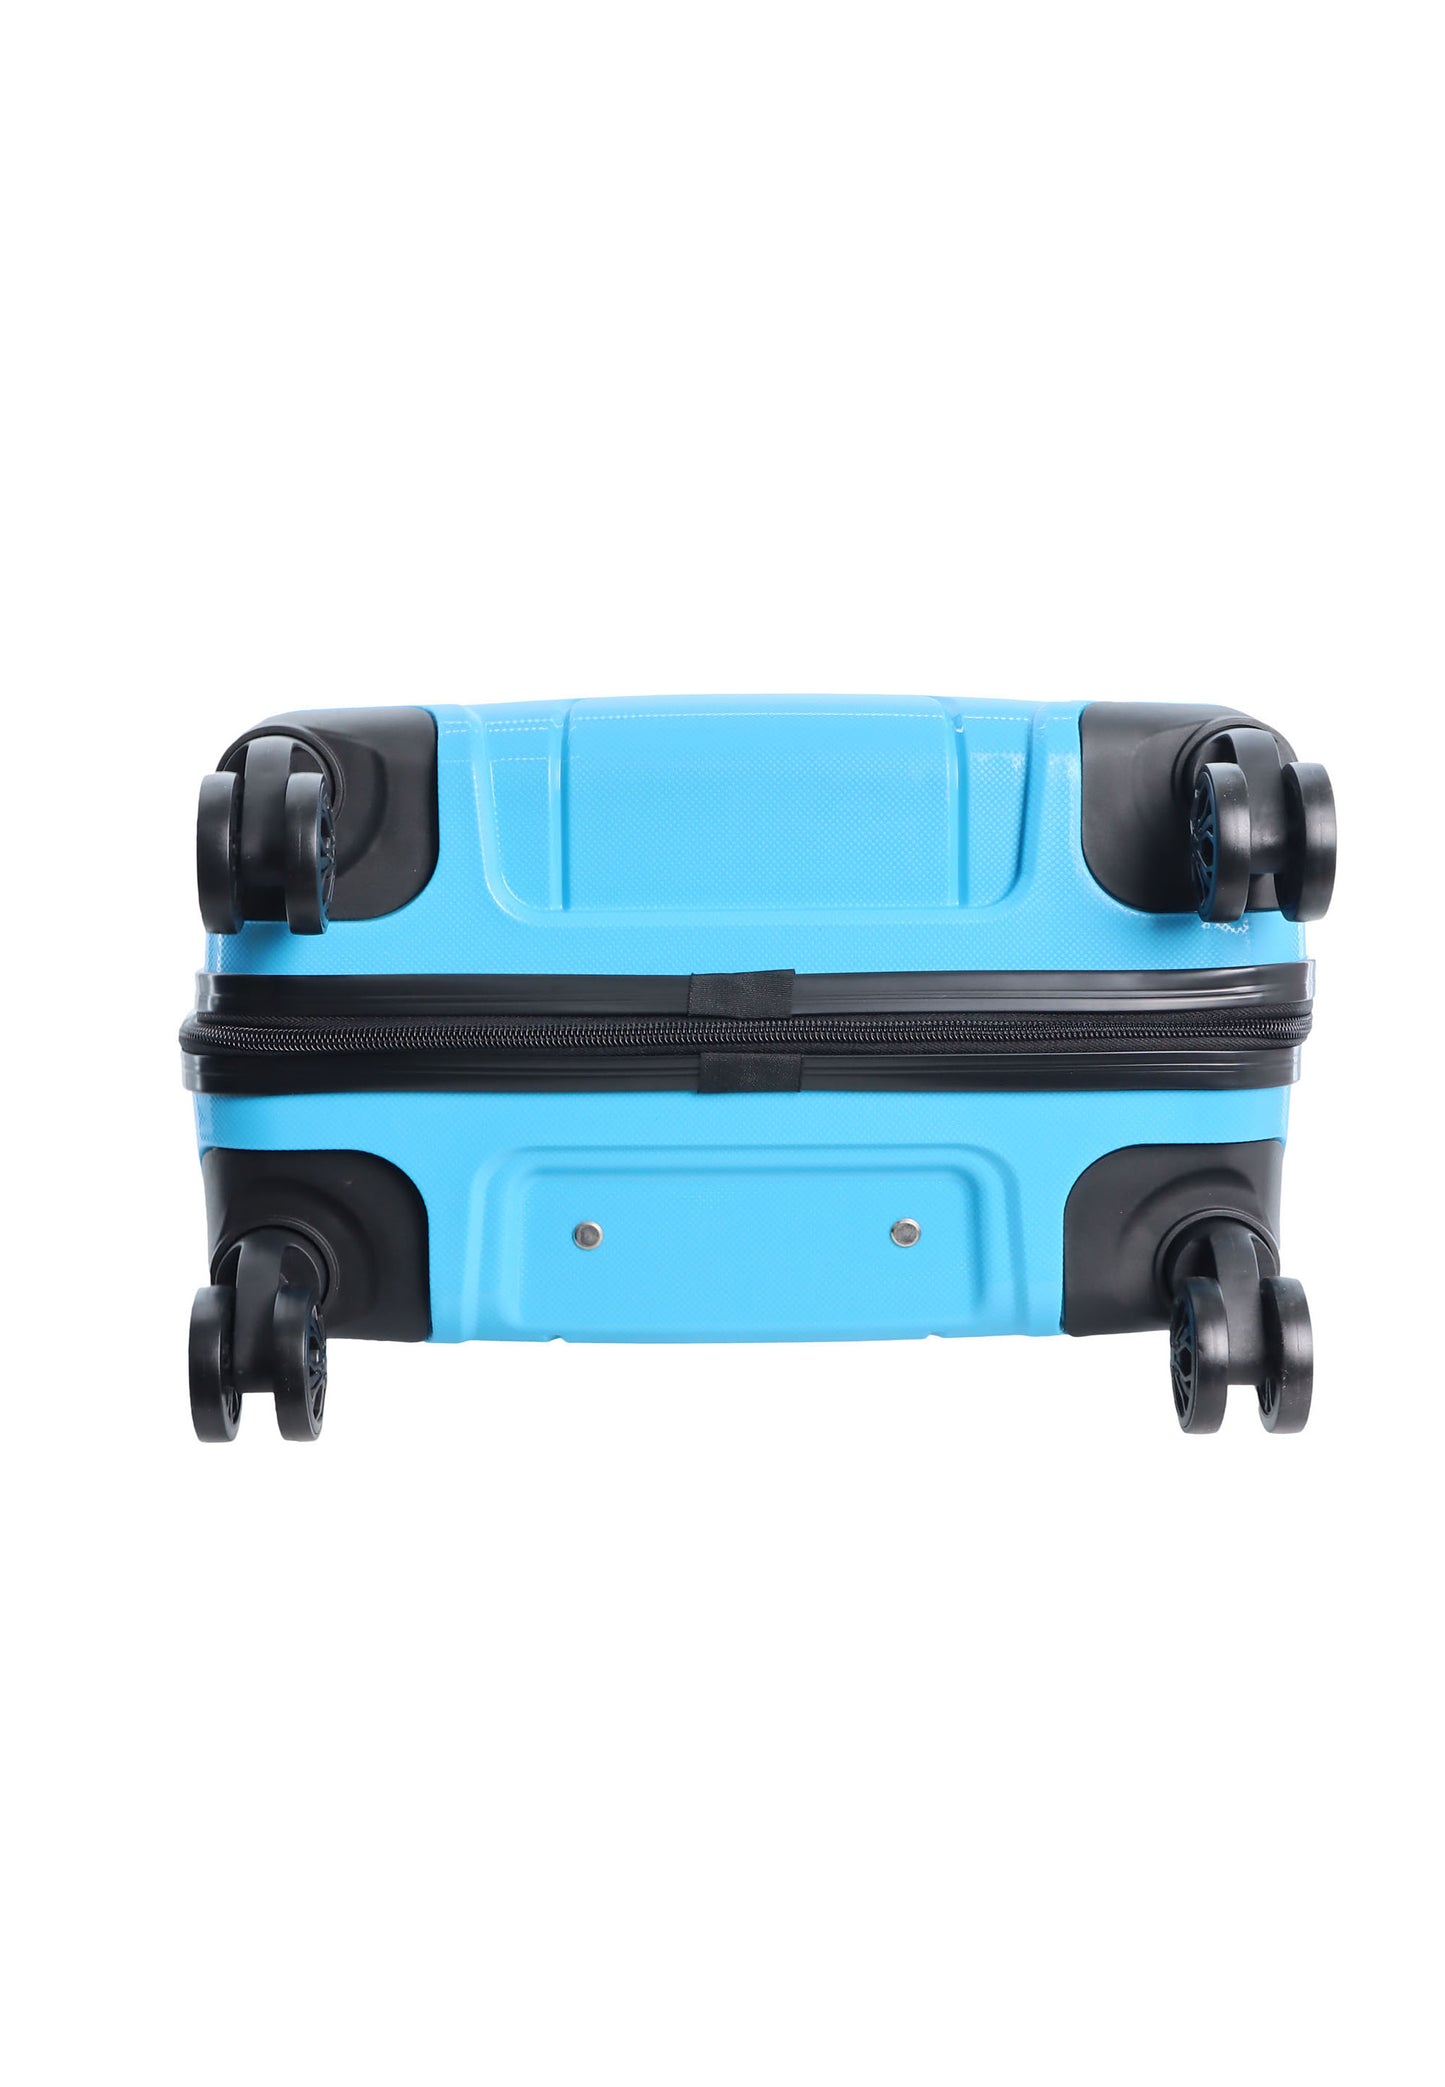 Discovery Skyward Handbagage Harde Koffer / Trolley / Reiskoffer - 55 cm (Small) - Blauw